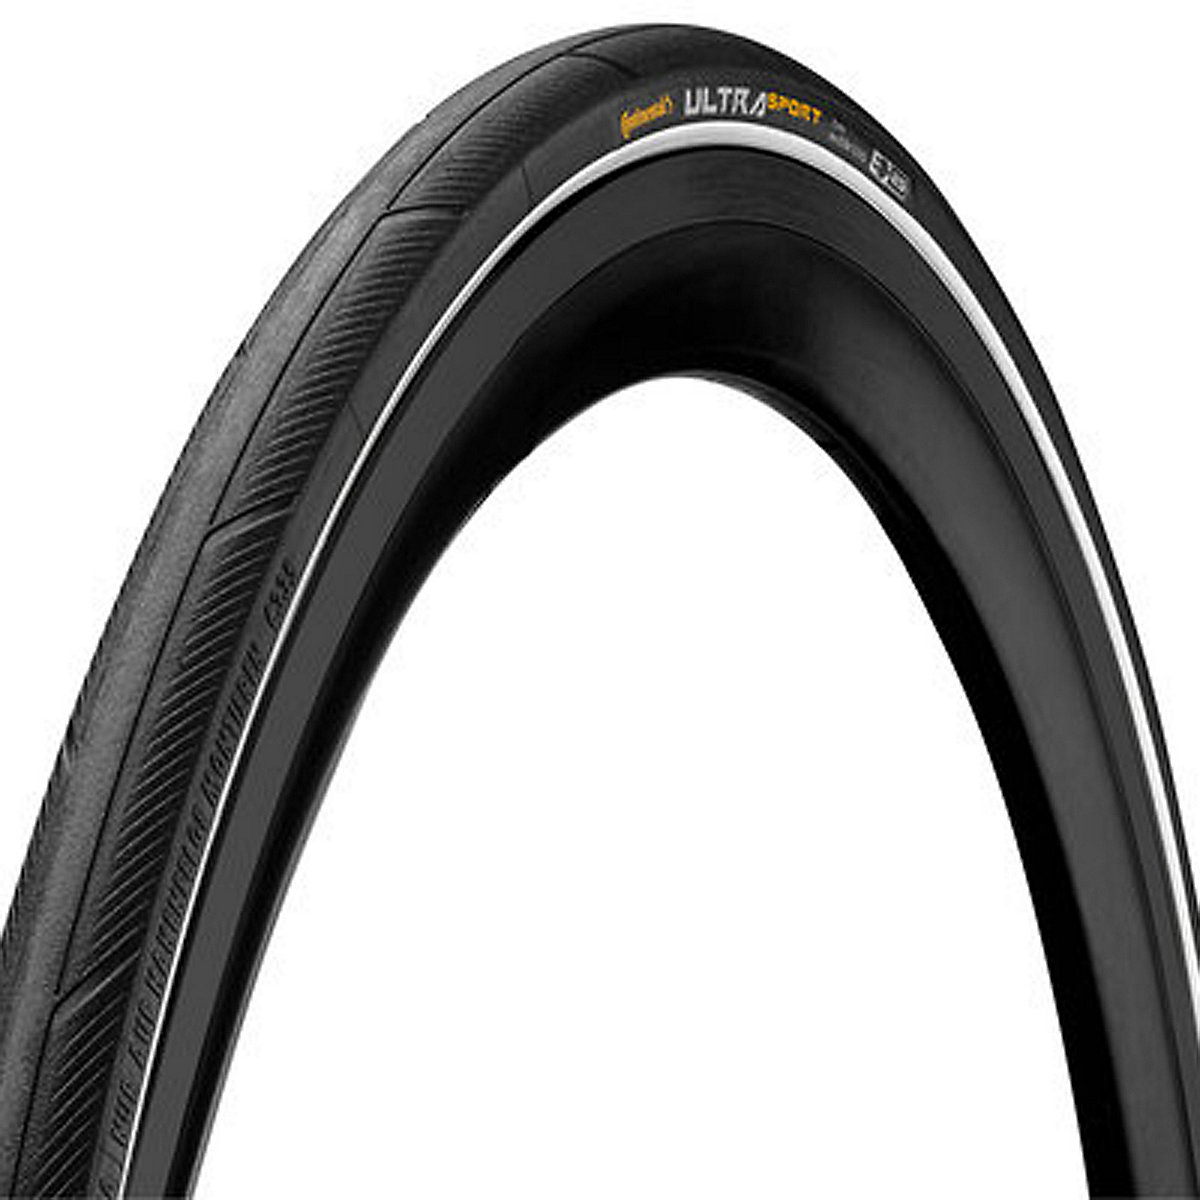 pneu pour vélo de route ultra sport iii 700 x 23c souple